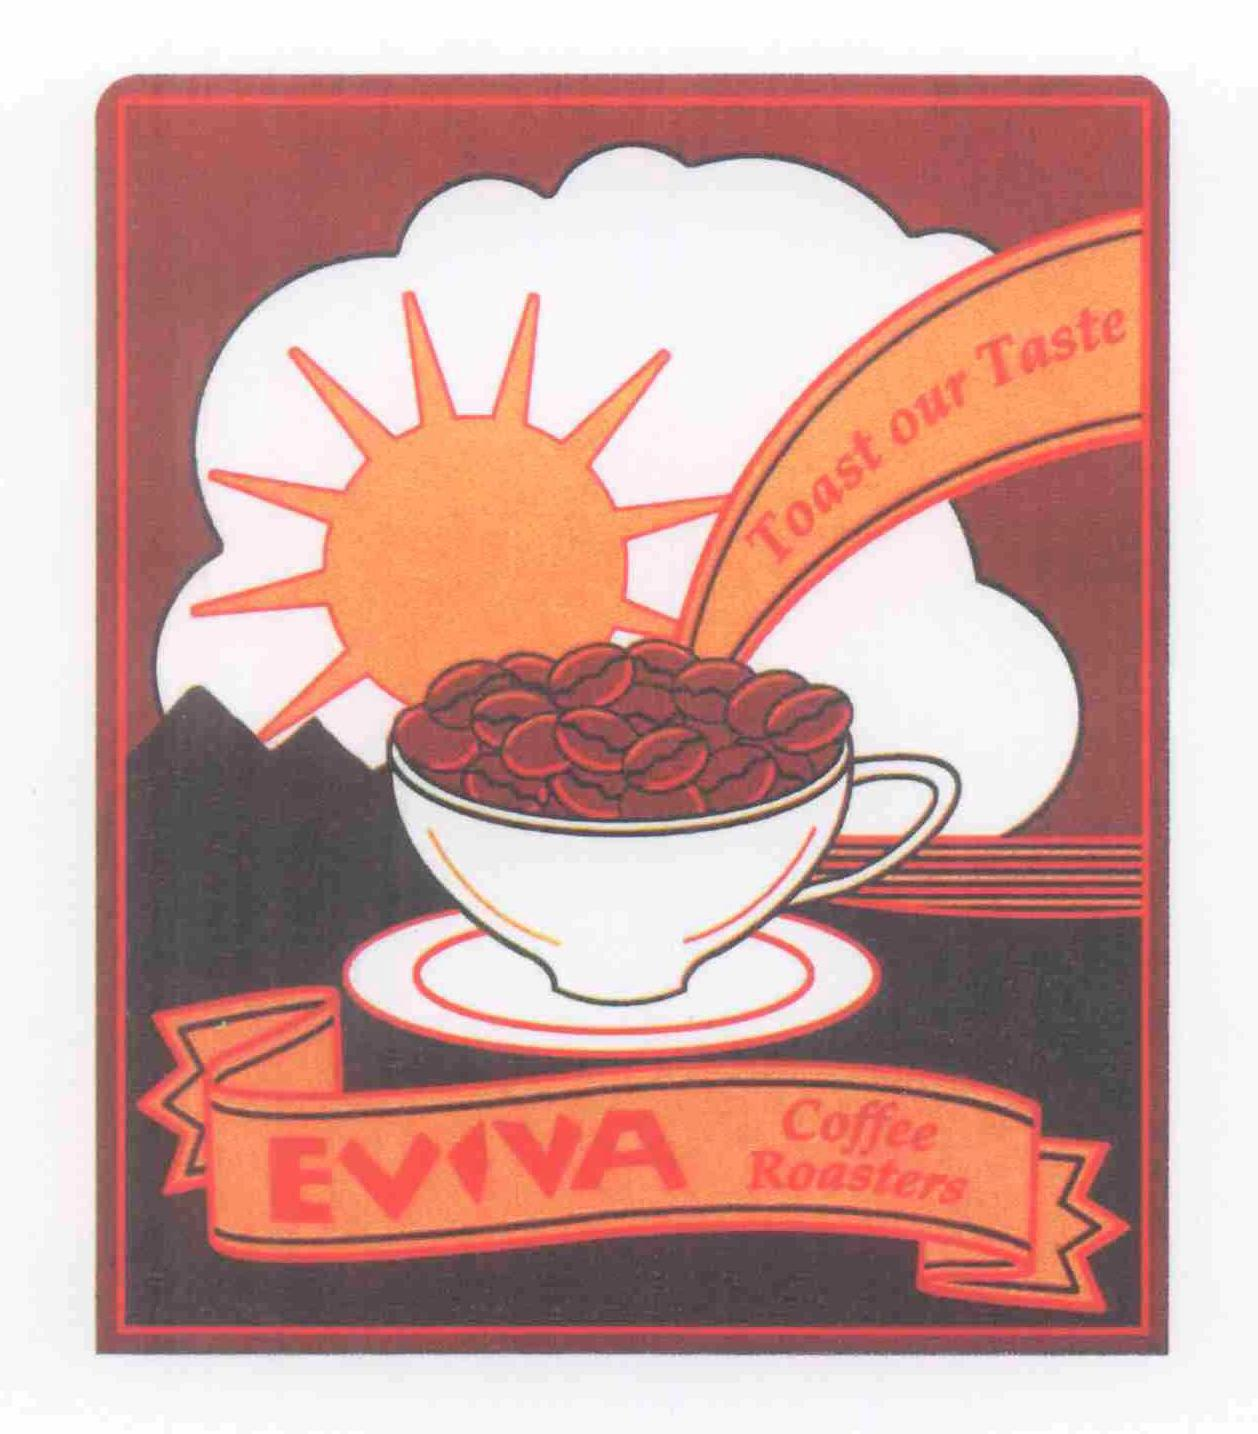  EVIVA COFFEE ROASTERS TOAST OUR TASTE